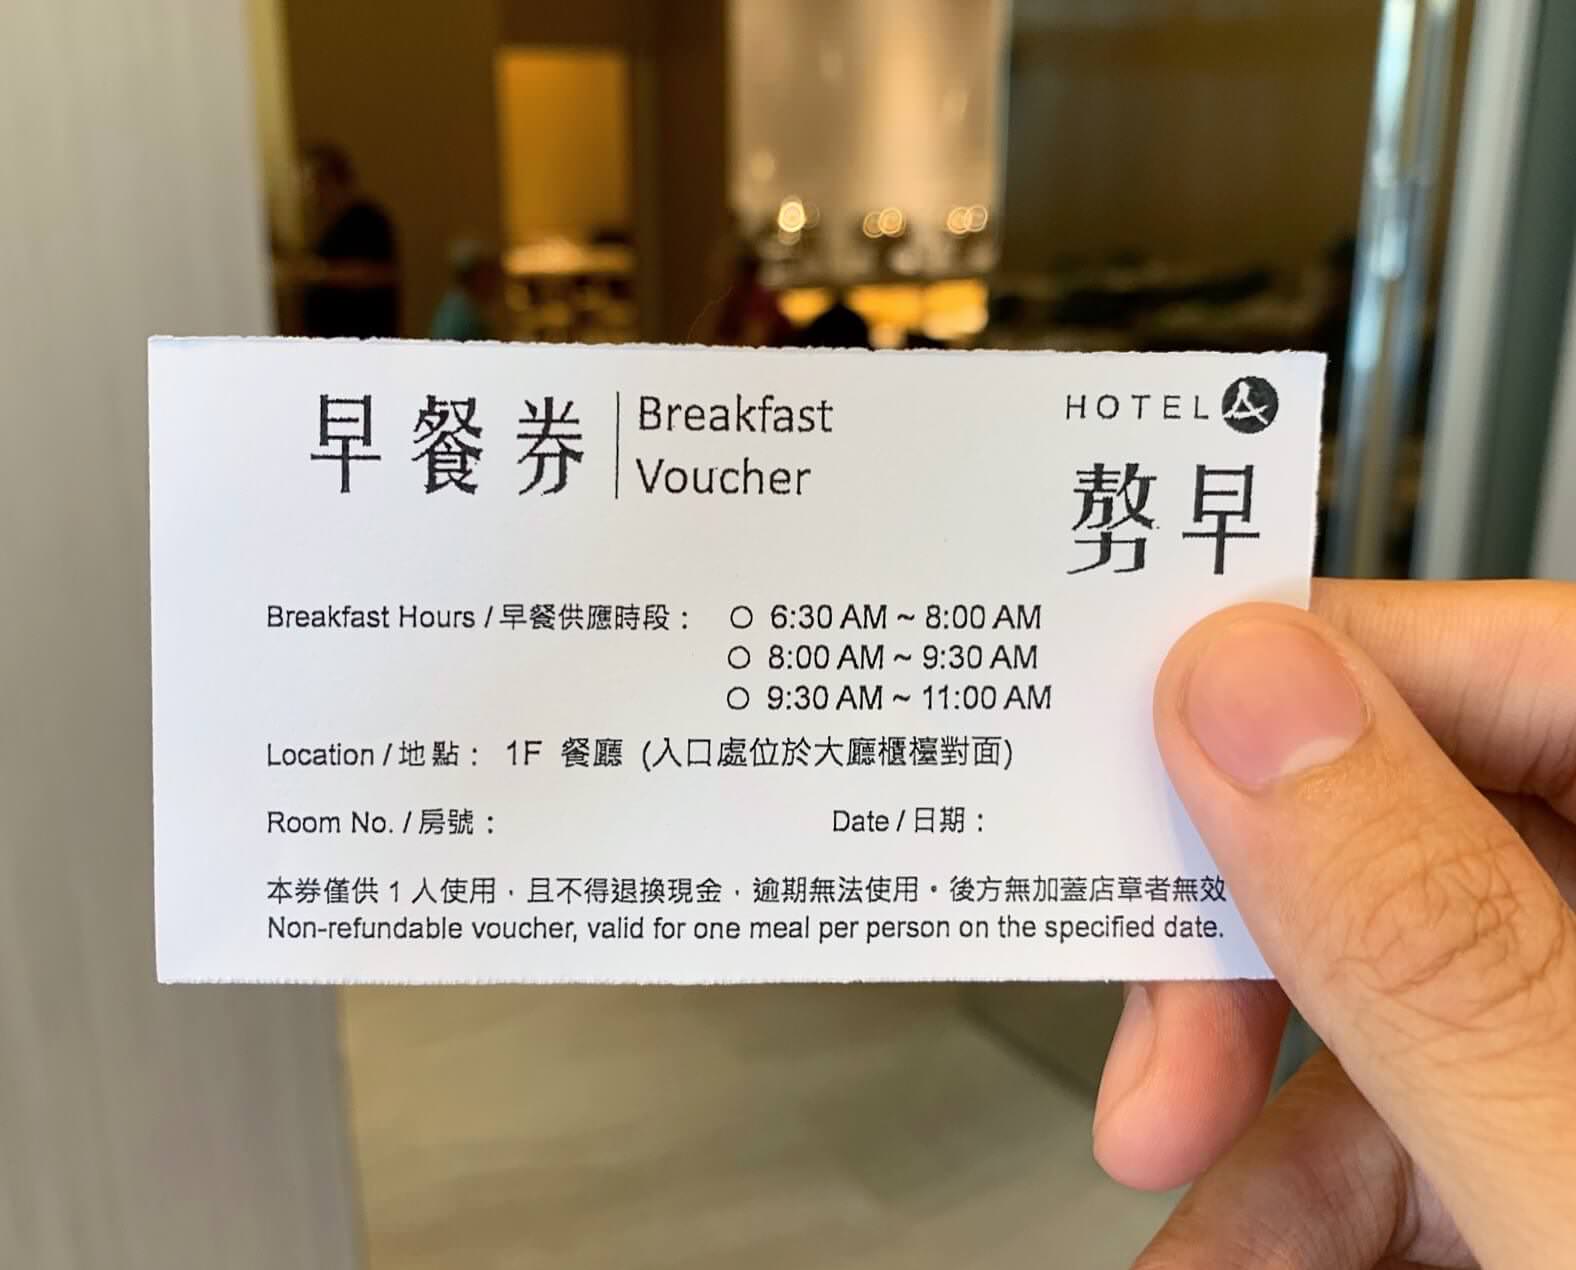 聖禾大飯店早餐